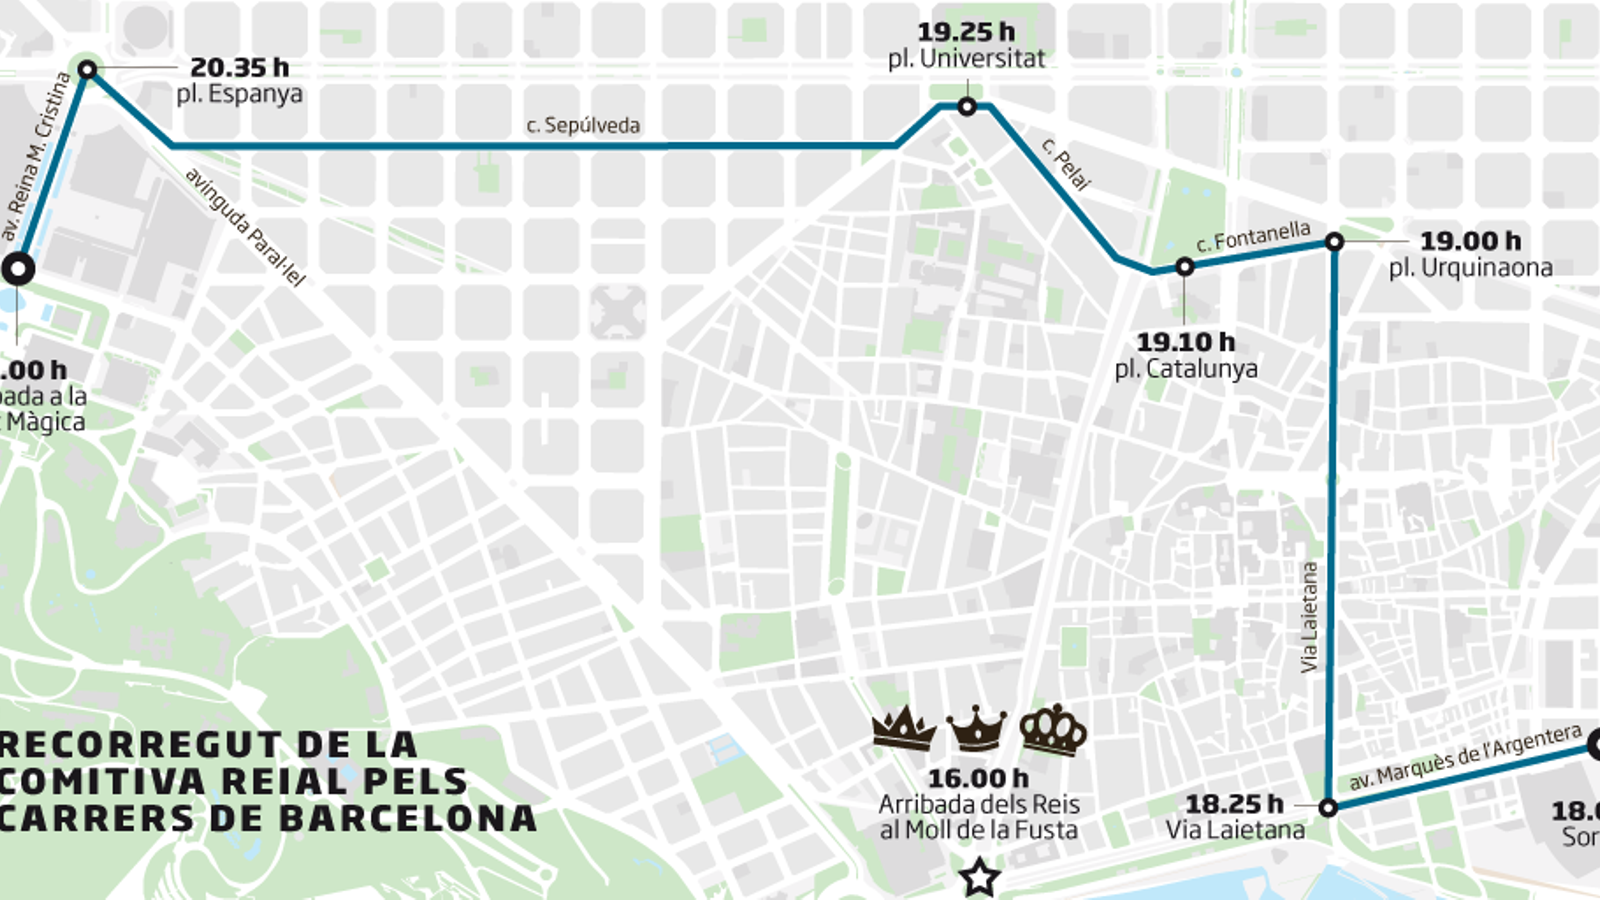 Barcelona mirarà al futur amb una Cavalcada de Reis amb més llum que mai